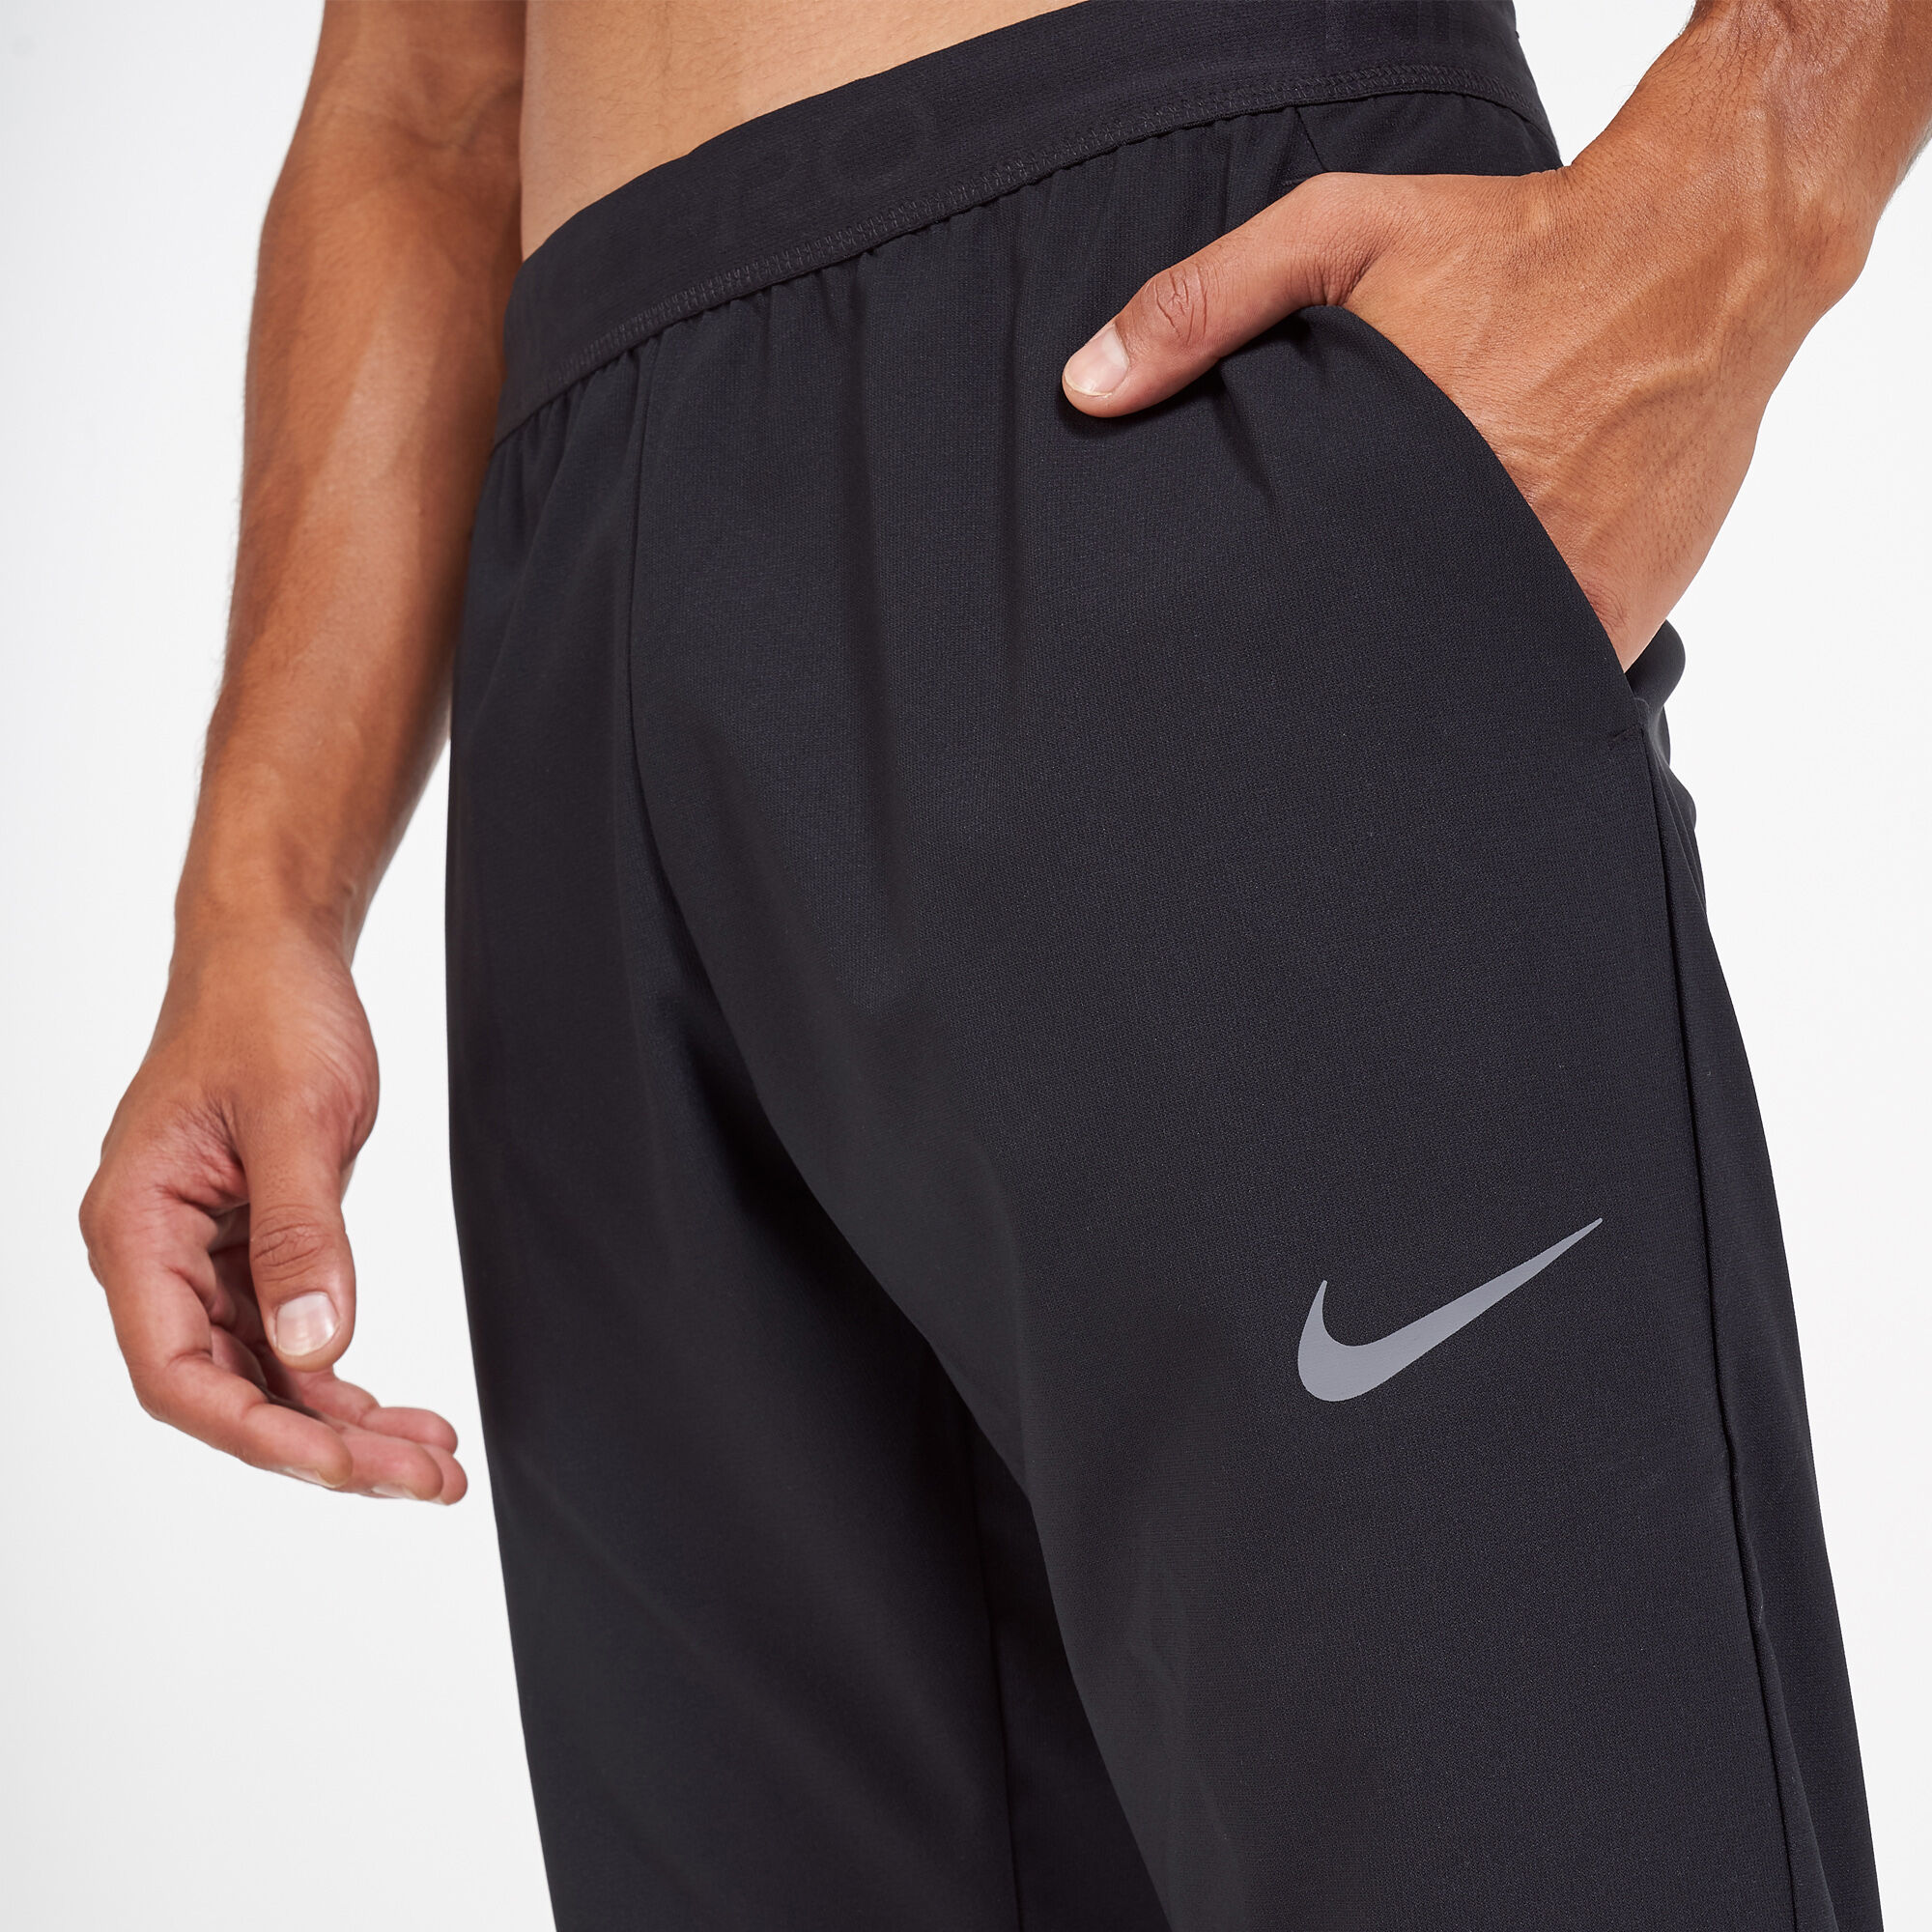 Nike Flex men's golf pants trousers size 36 x 32 AJ5489-010 black Dri-fit |  eBay